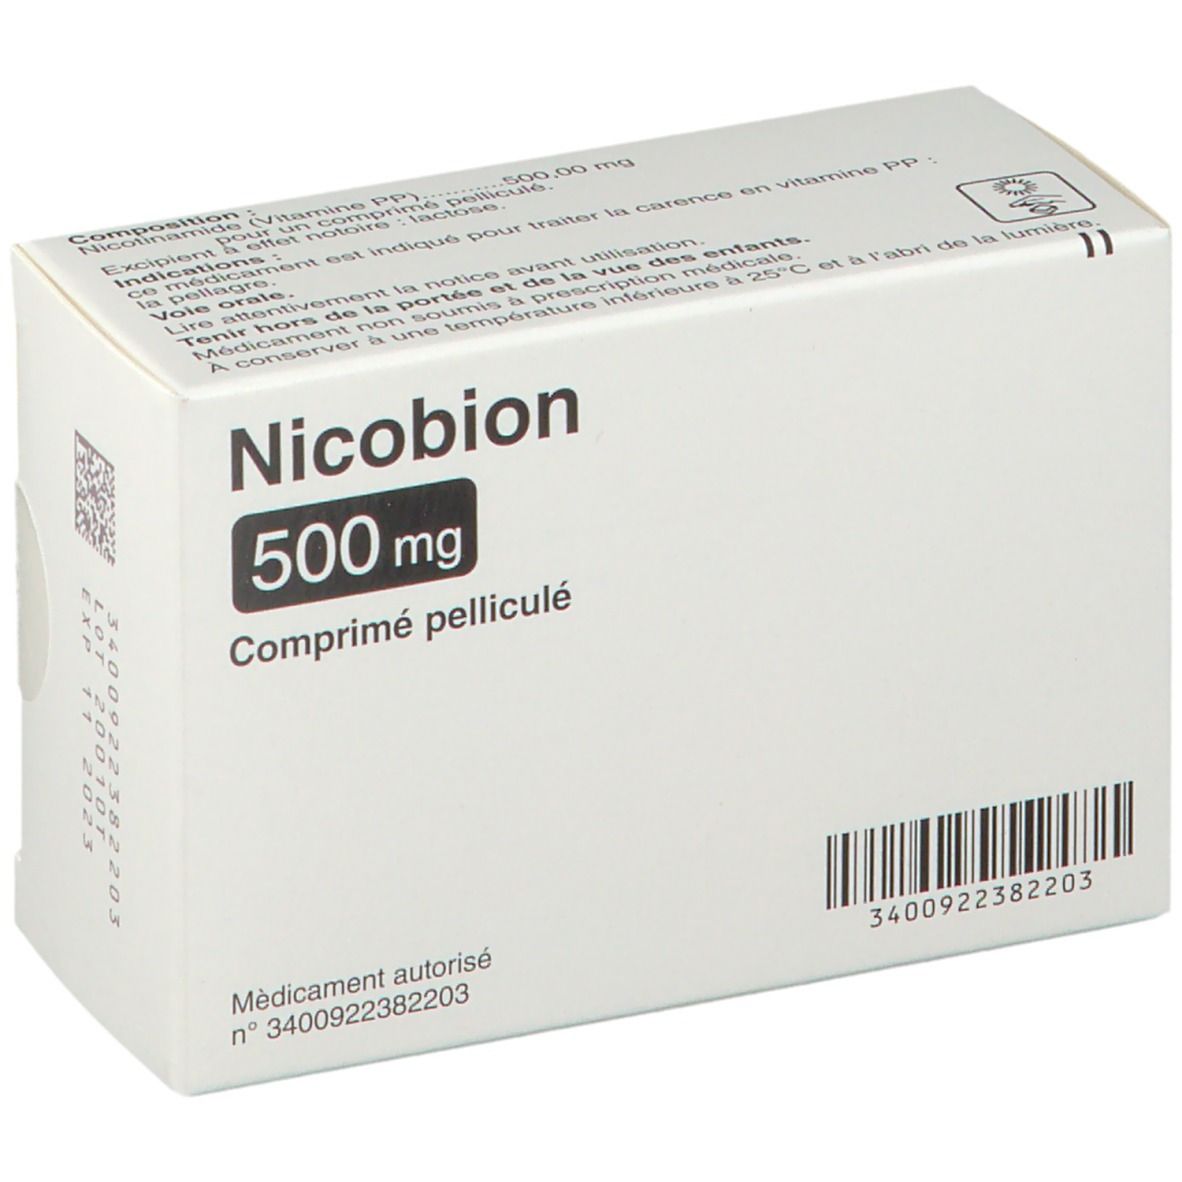 Nicobion 500 mg